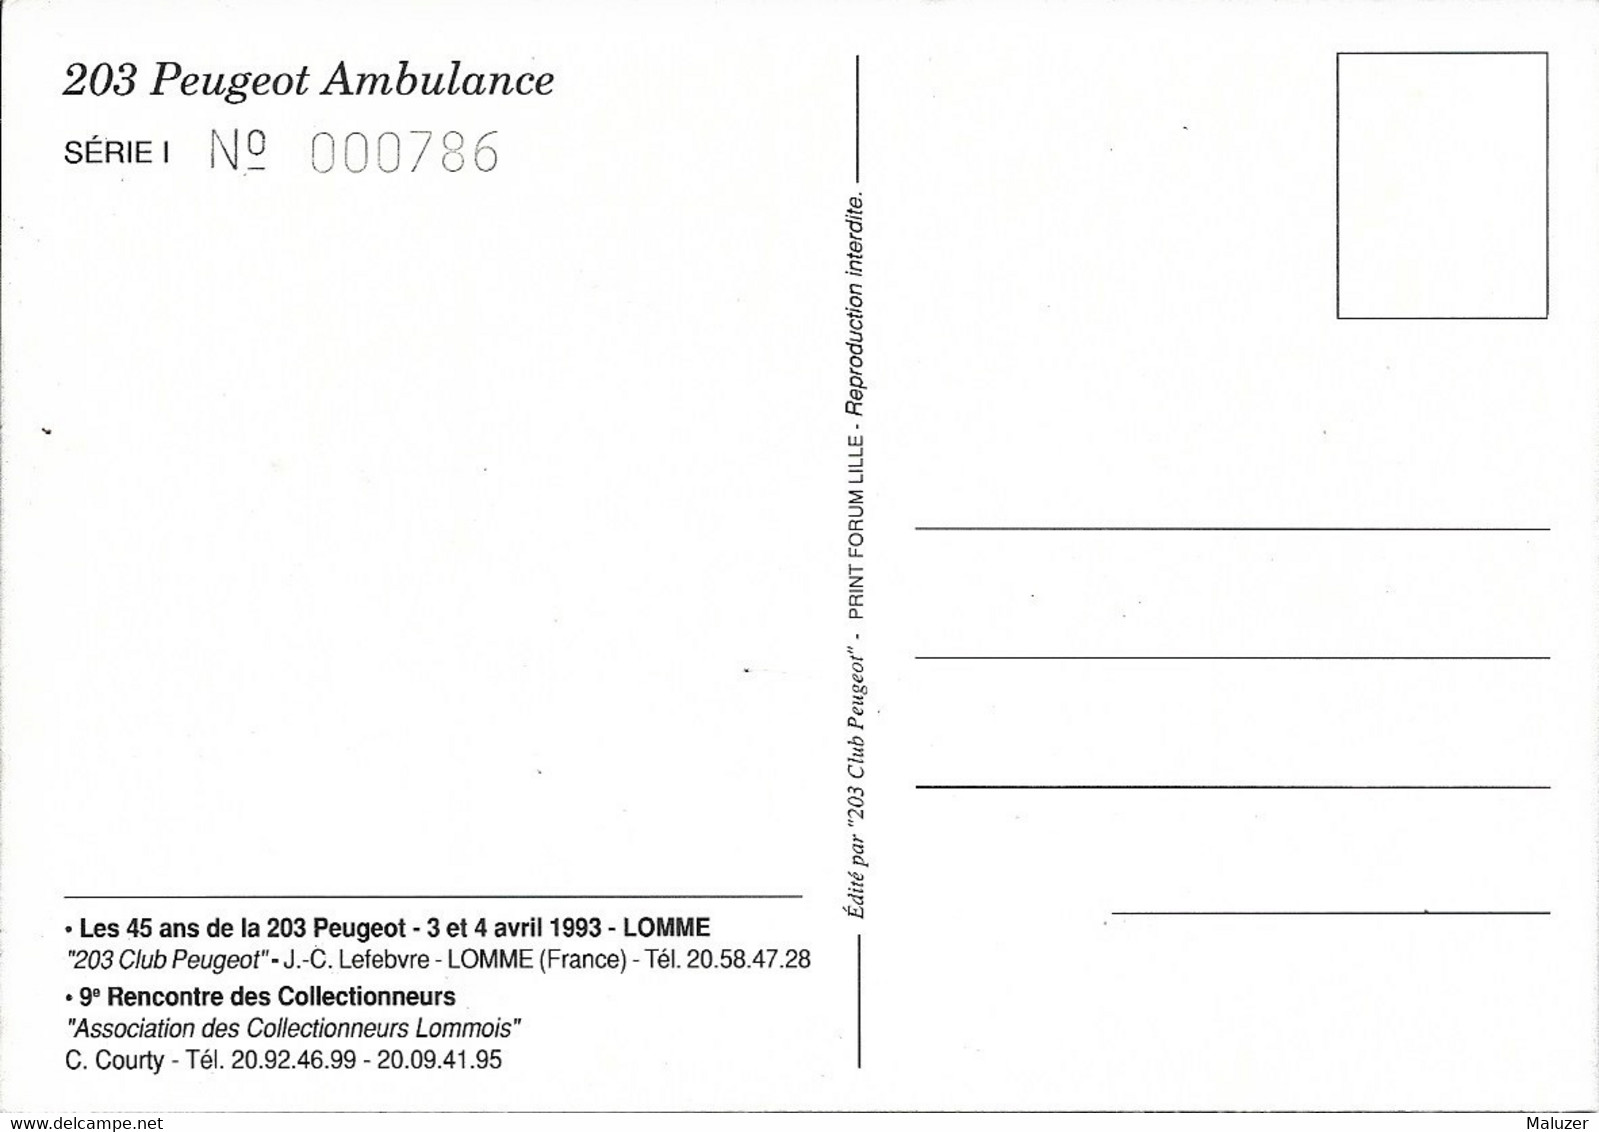 CARTE POSTALE ASSOCIATION DES COLLECTIONNEURS LOMMOIS LOMME - 45 ANS DE LA PEUGEOT 203 - AVRIL 1993 - N° 786 - AMBULANCE - Lomme